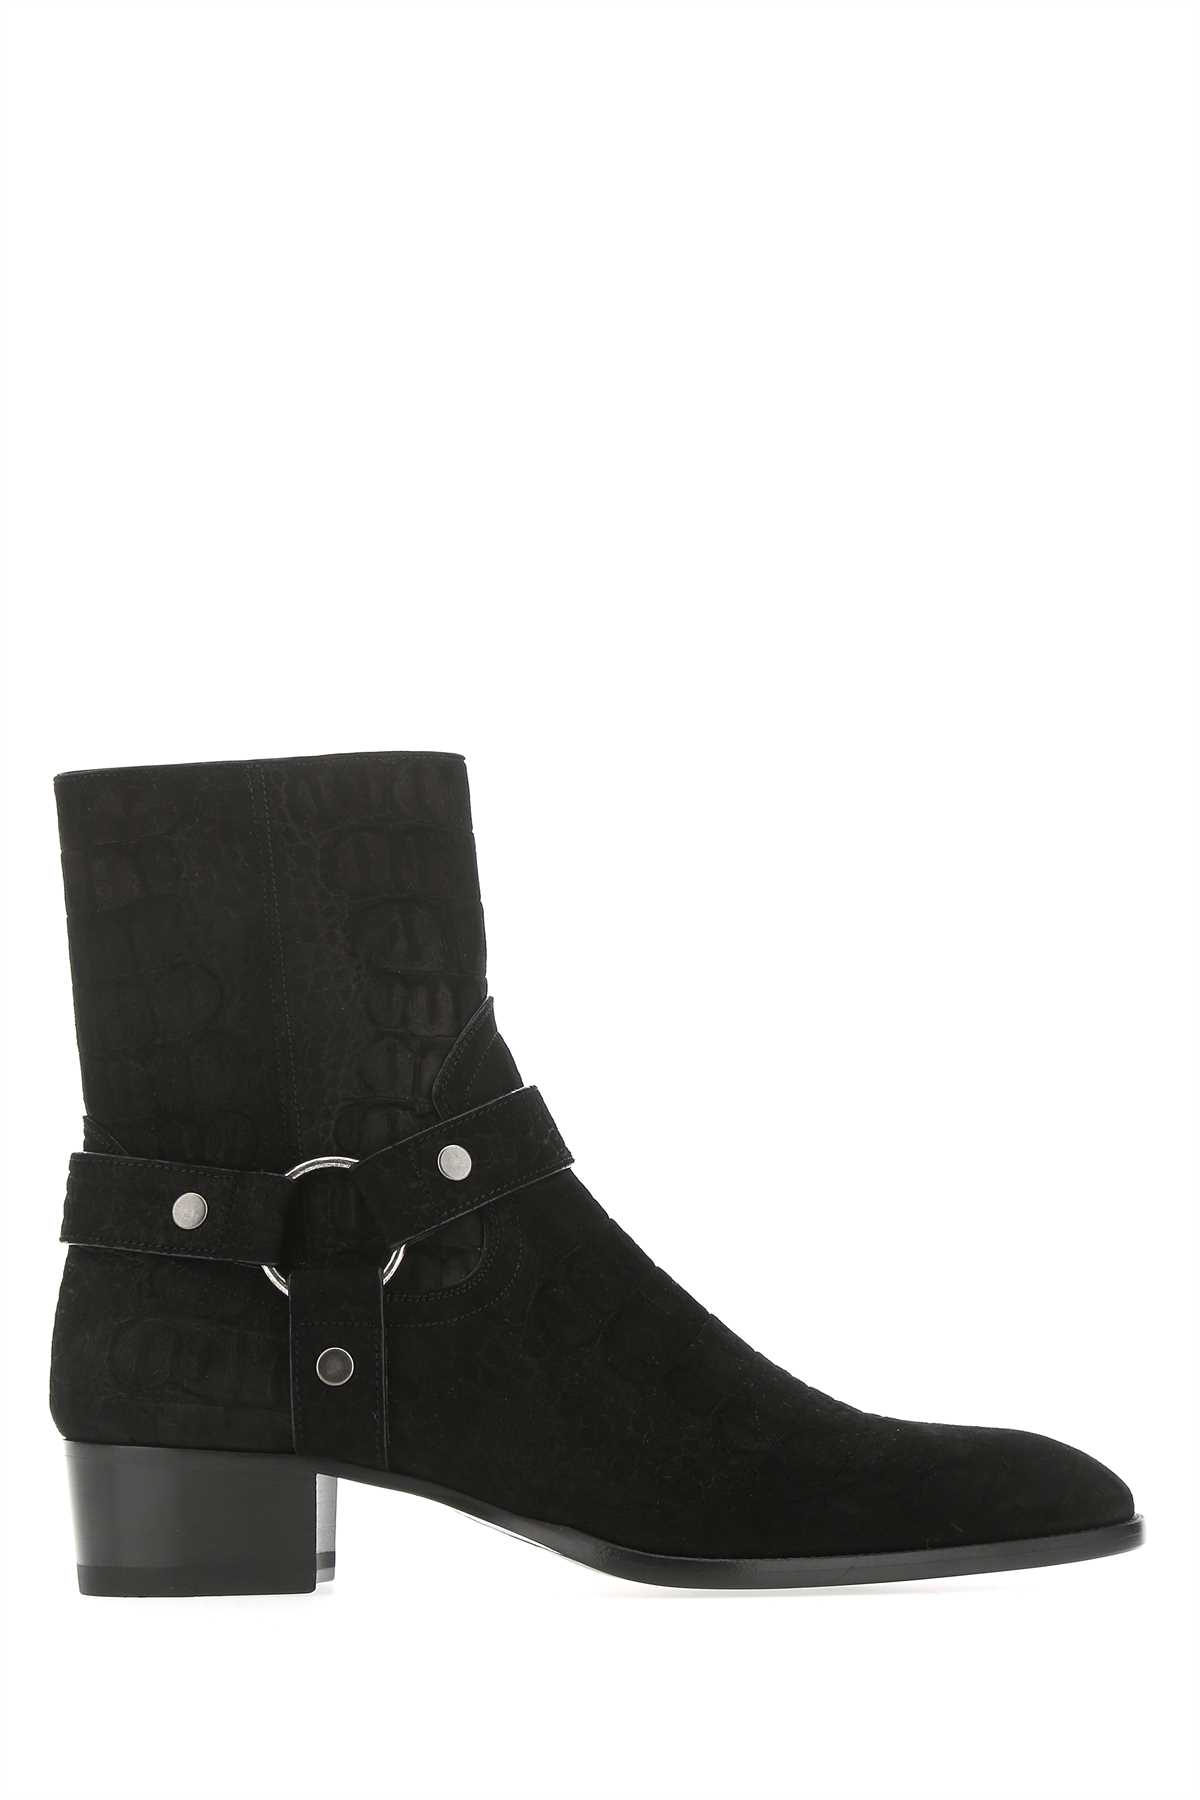 Saint Laurent Black Suede Boots In Nero